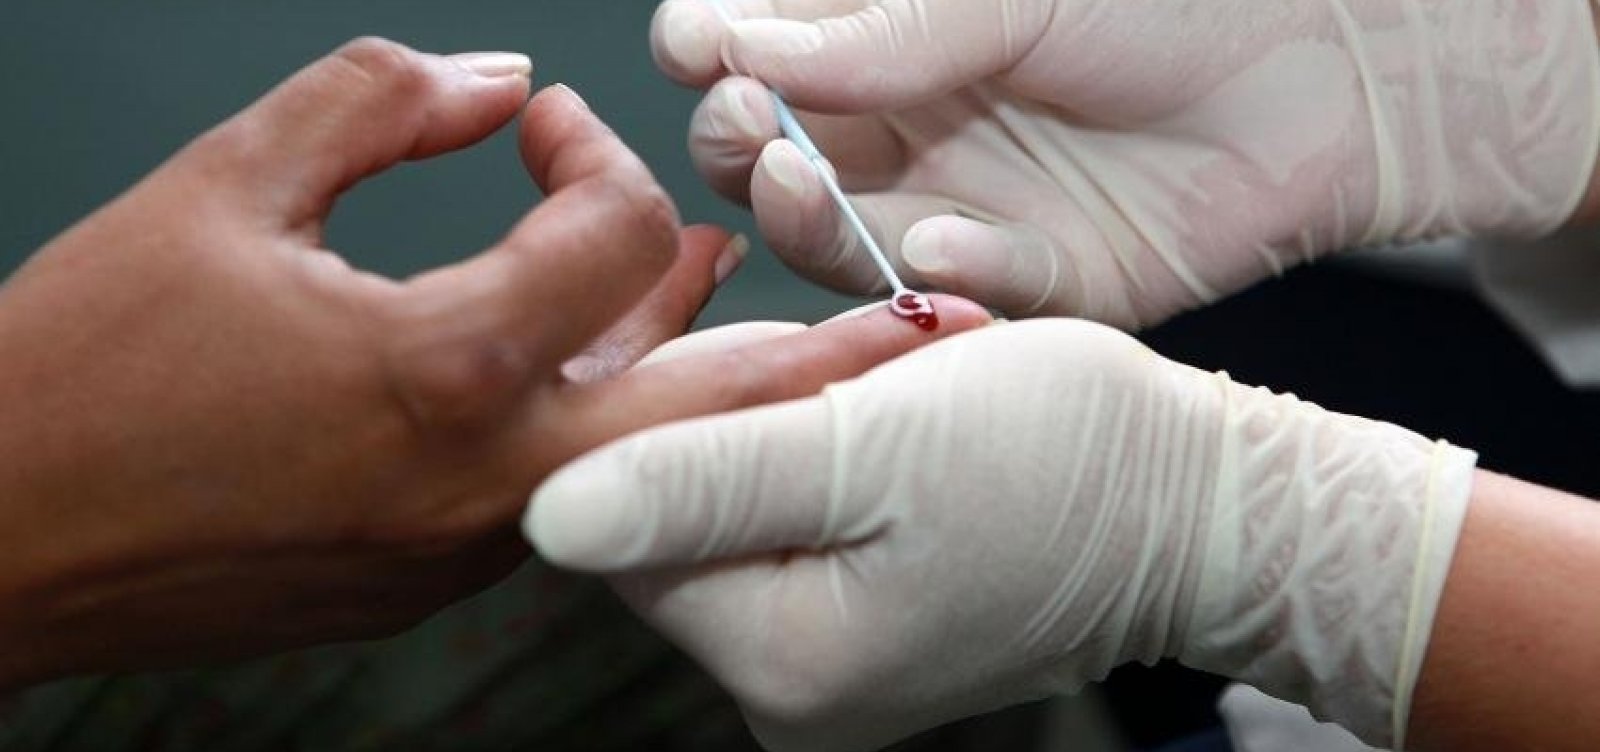 Número de detecções de Aids cai 16% no Brasil